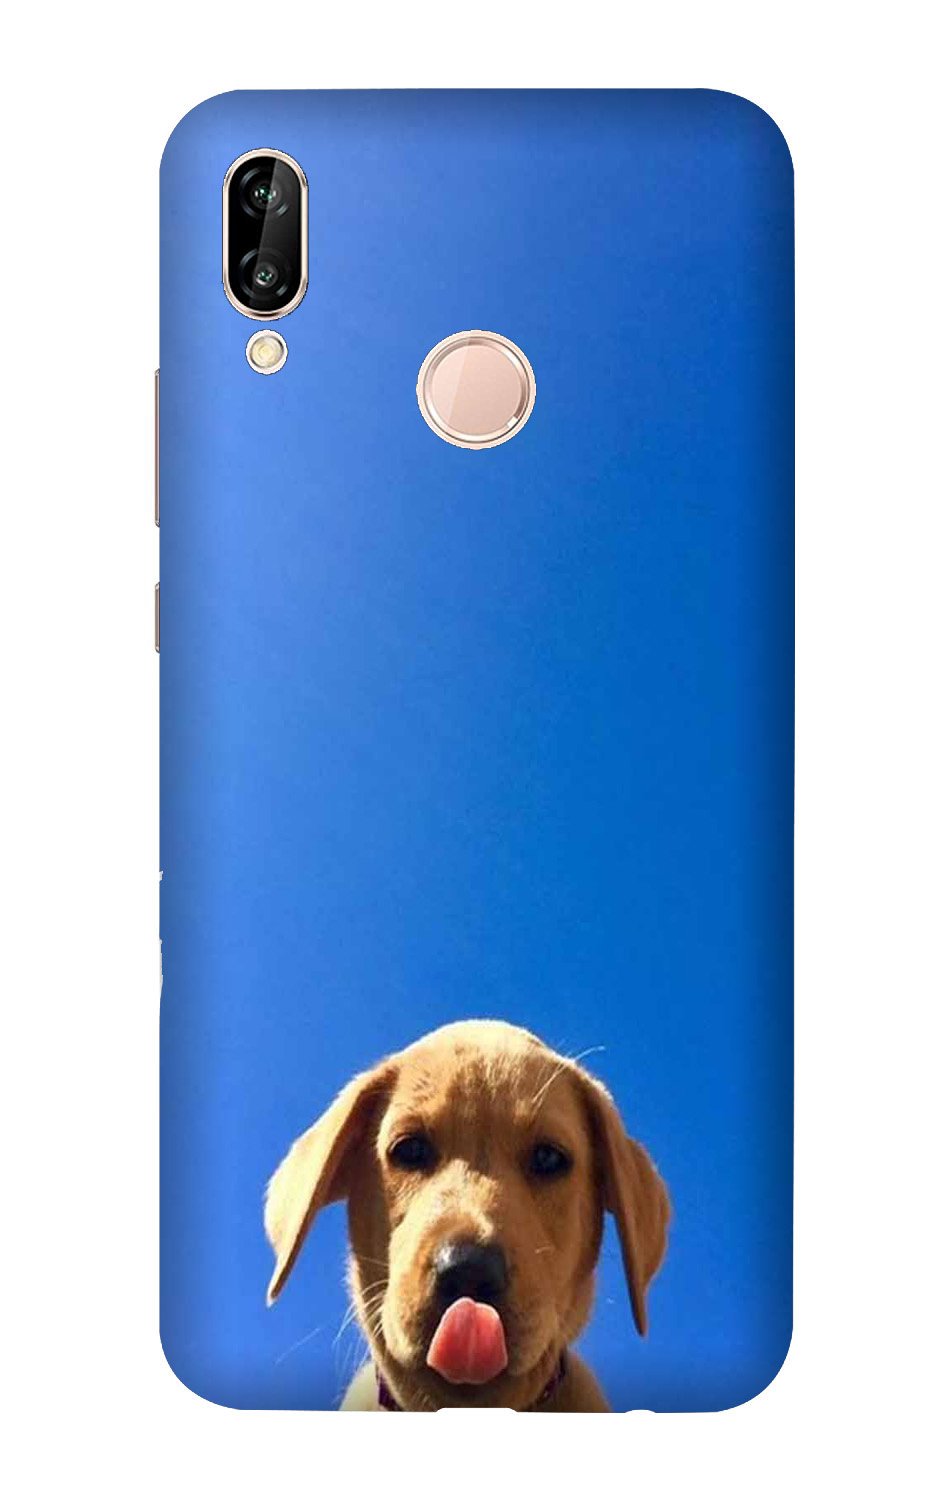 Dog Mobile Back Case for Vivo Y95/ Y93   (Design - 332)